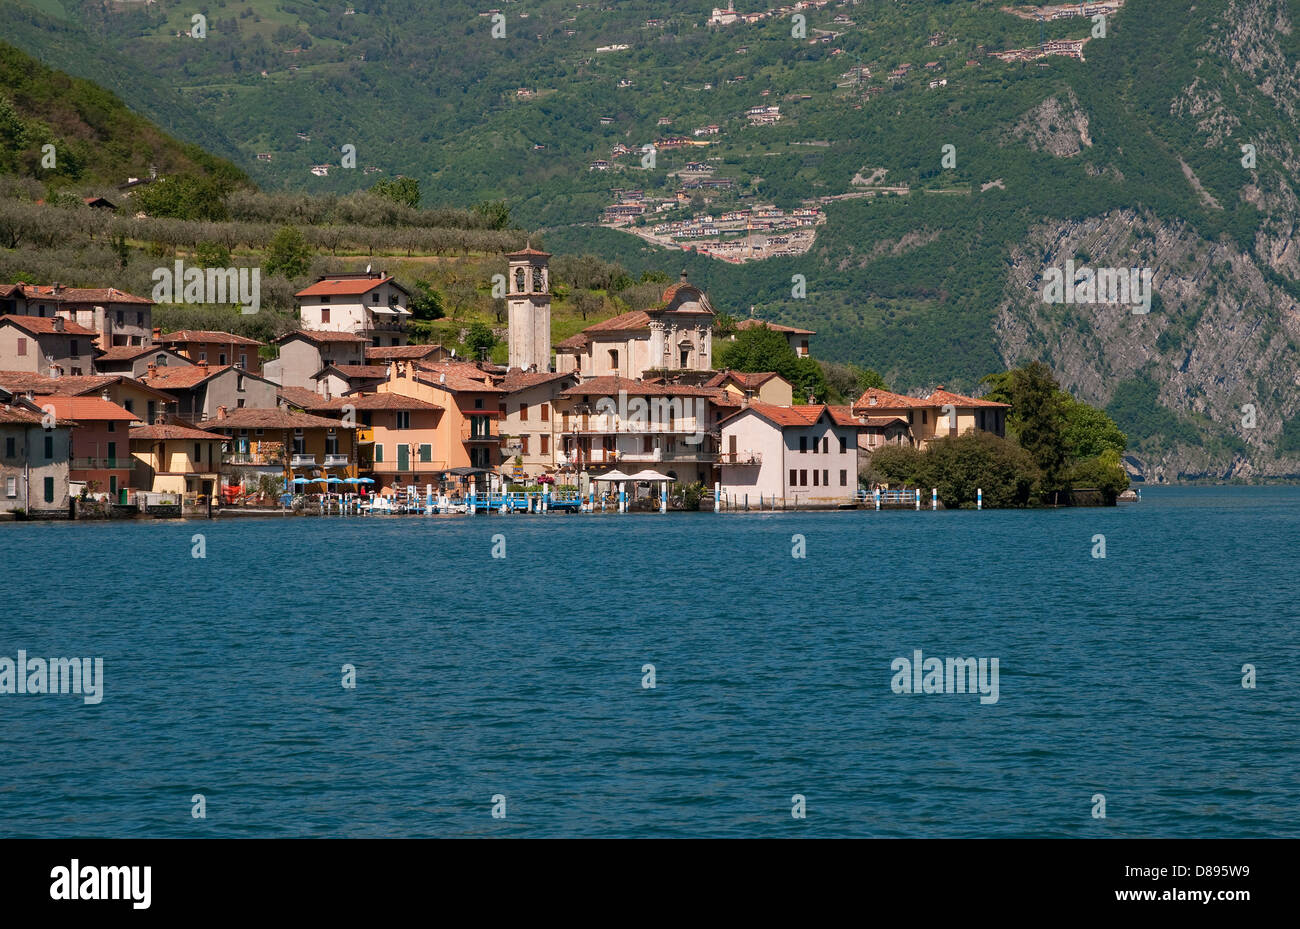 carzano, monte isola, lake iseo, lombardy, italy Stock Photo